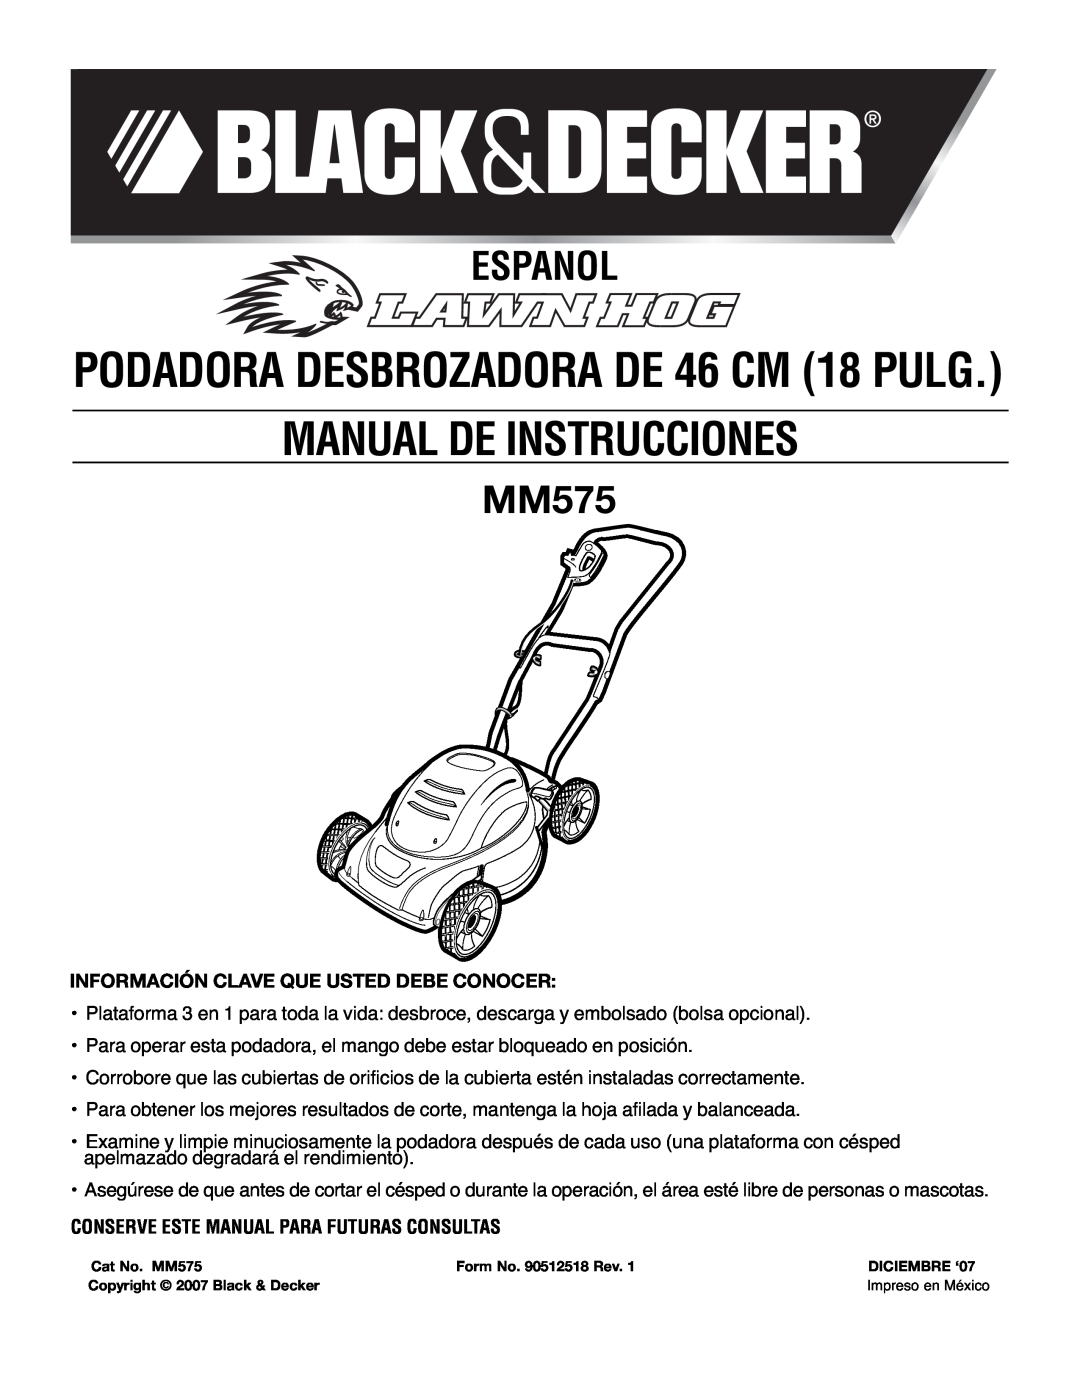 Black & Decker MM575 Español, Información Clave Que Usted Debe Conocer, Conserve Este Manual Para Futuras Consultas 